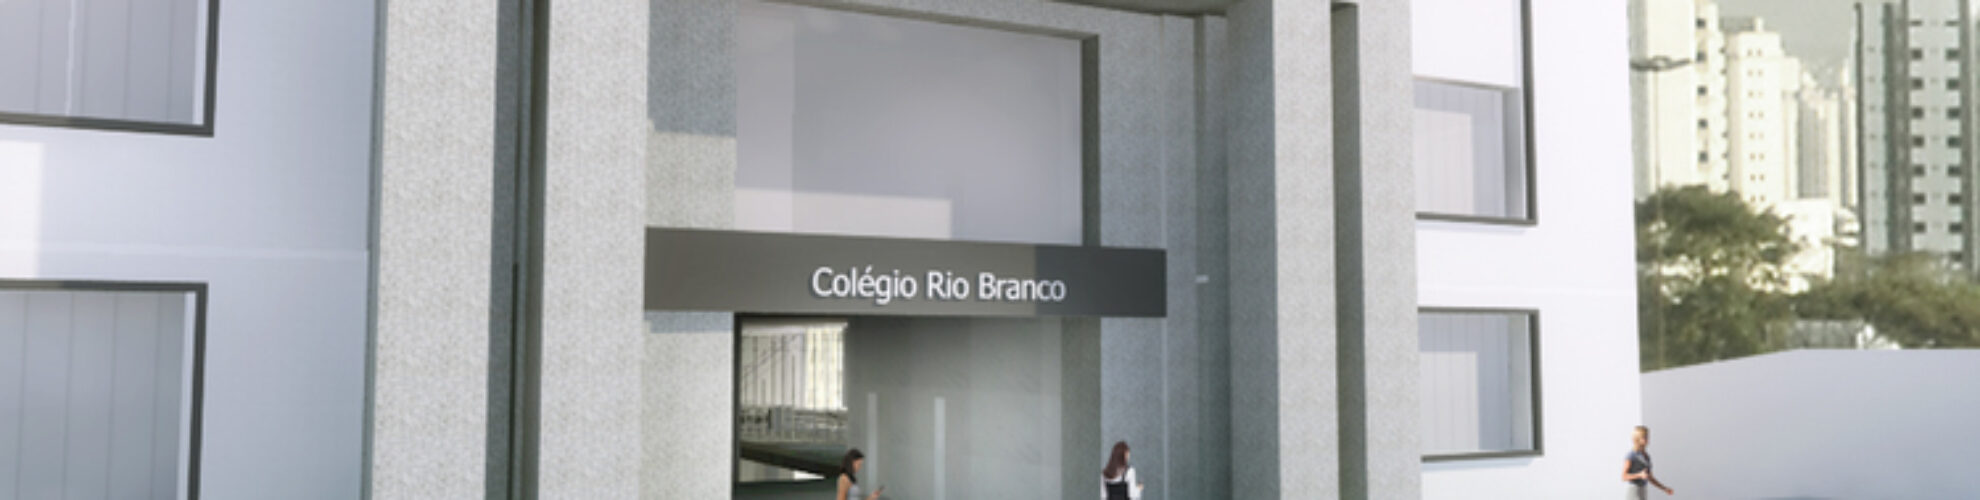 Plano-Diretor-Colegio-Rio-Branco-1